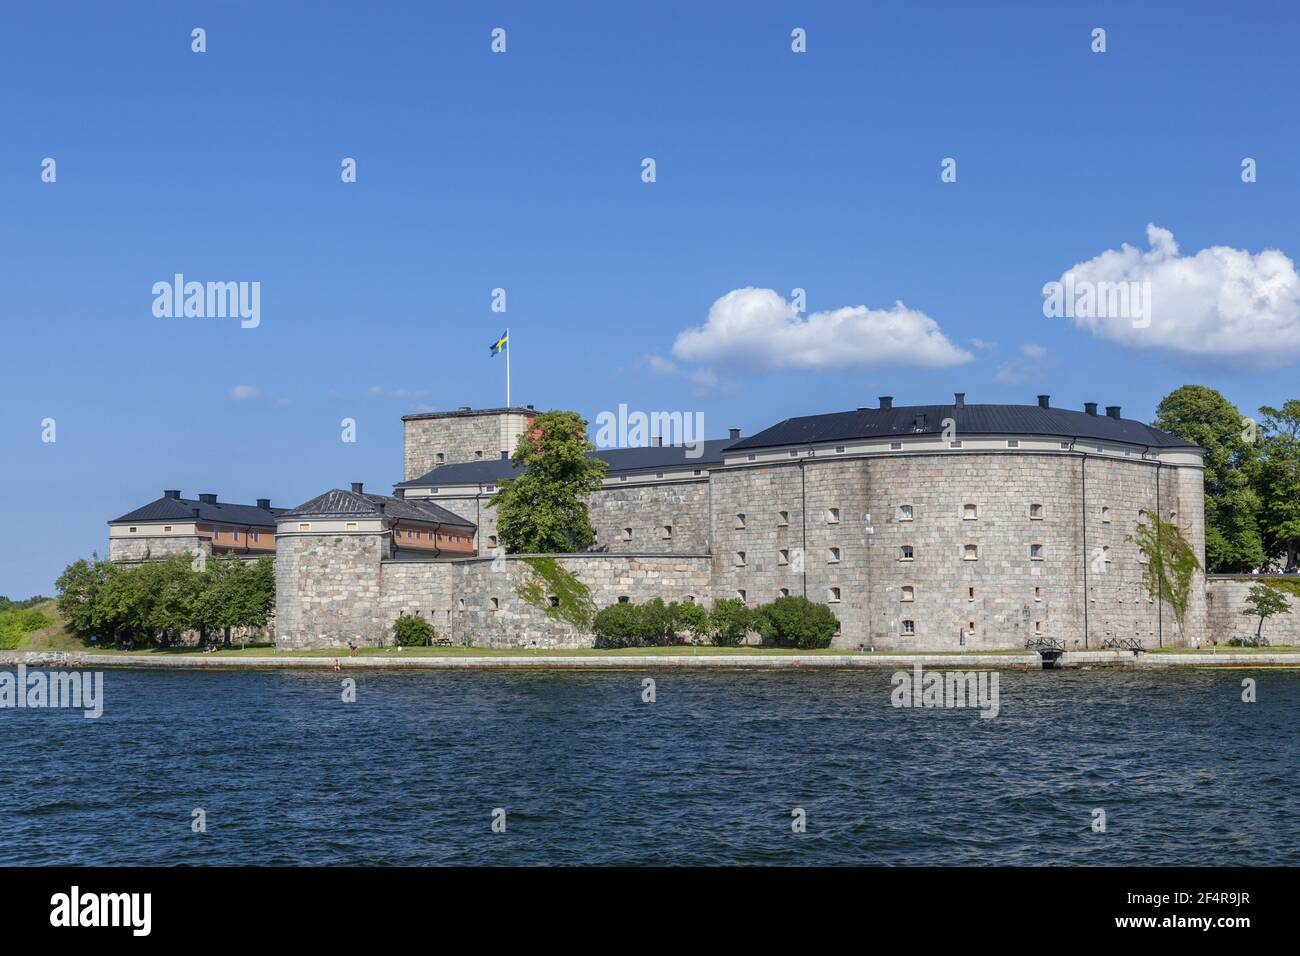 Geografia / viaggio, Svezia, Stoccolma laen, Vaxholm, castello di fortificazione a Vaxholm, di Stoccolma ske, diritti aggiuntivi-clearance-Info-non-disponibile Foto Stock